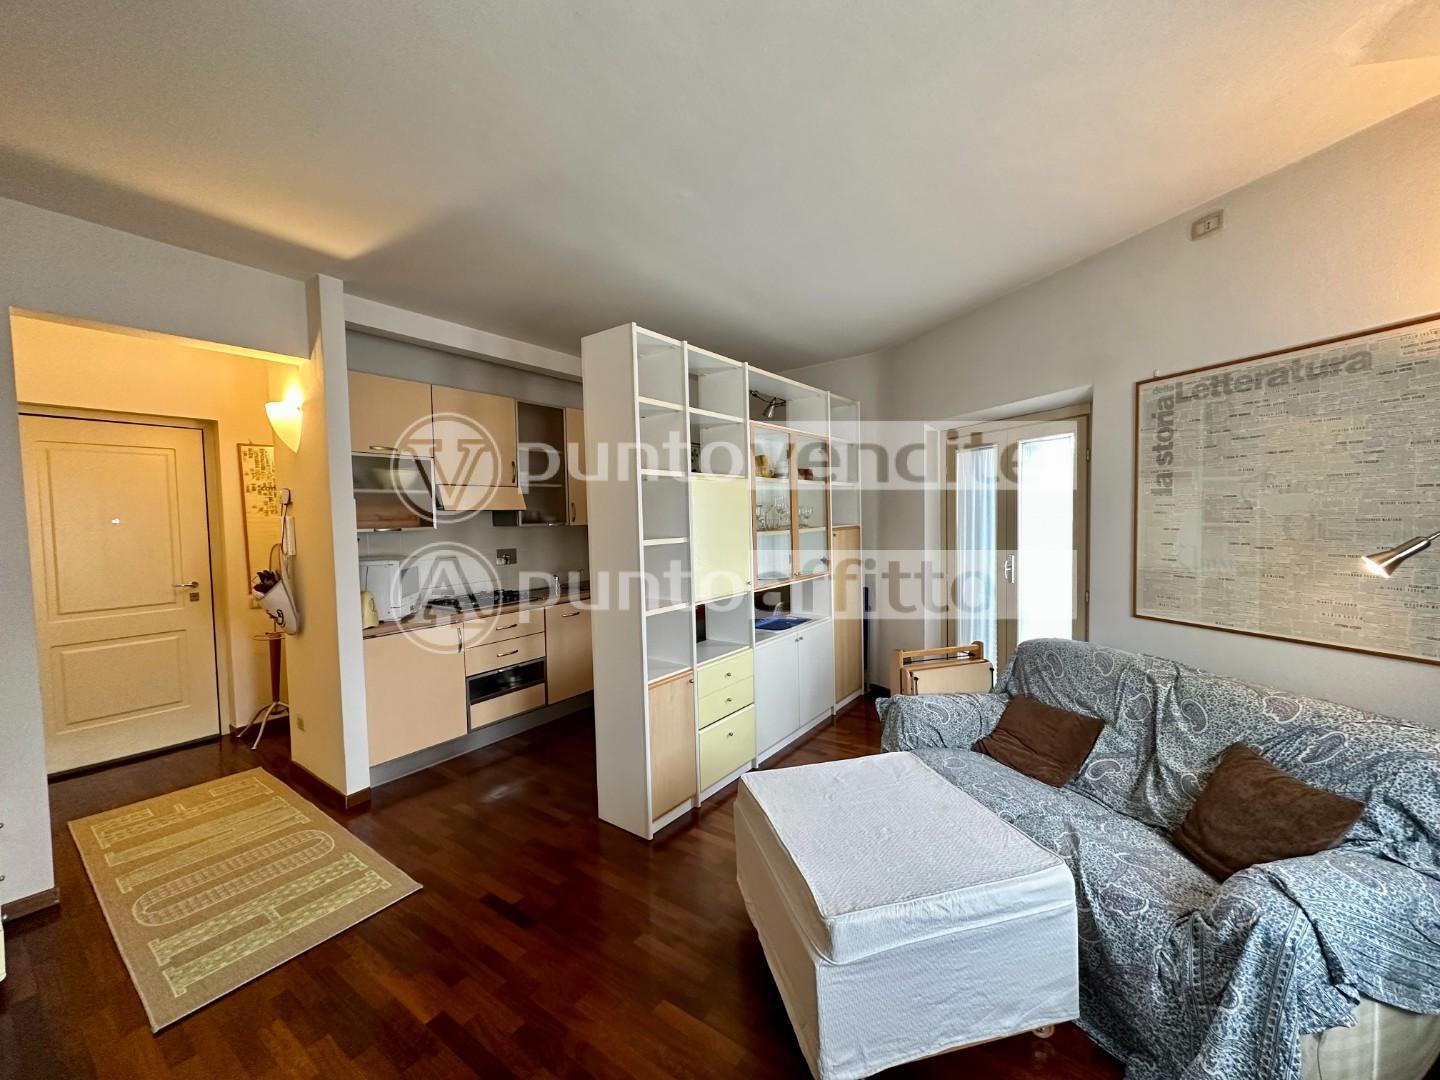 Appartamento in vendita Lucca